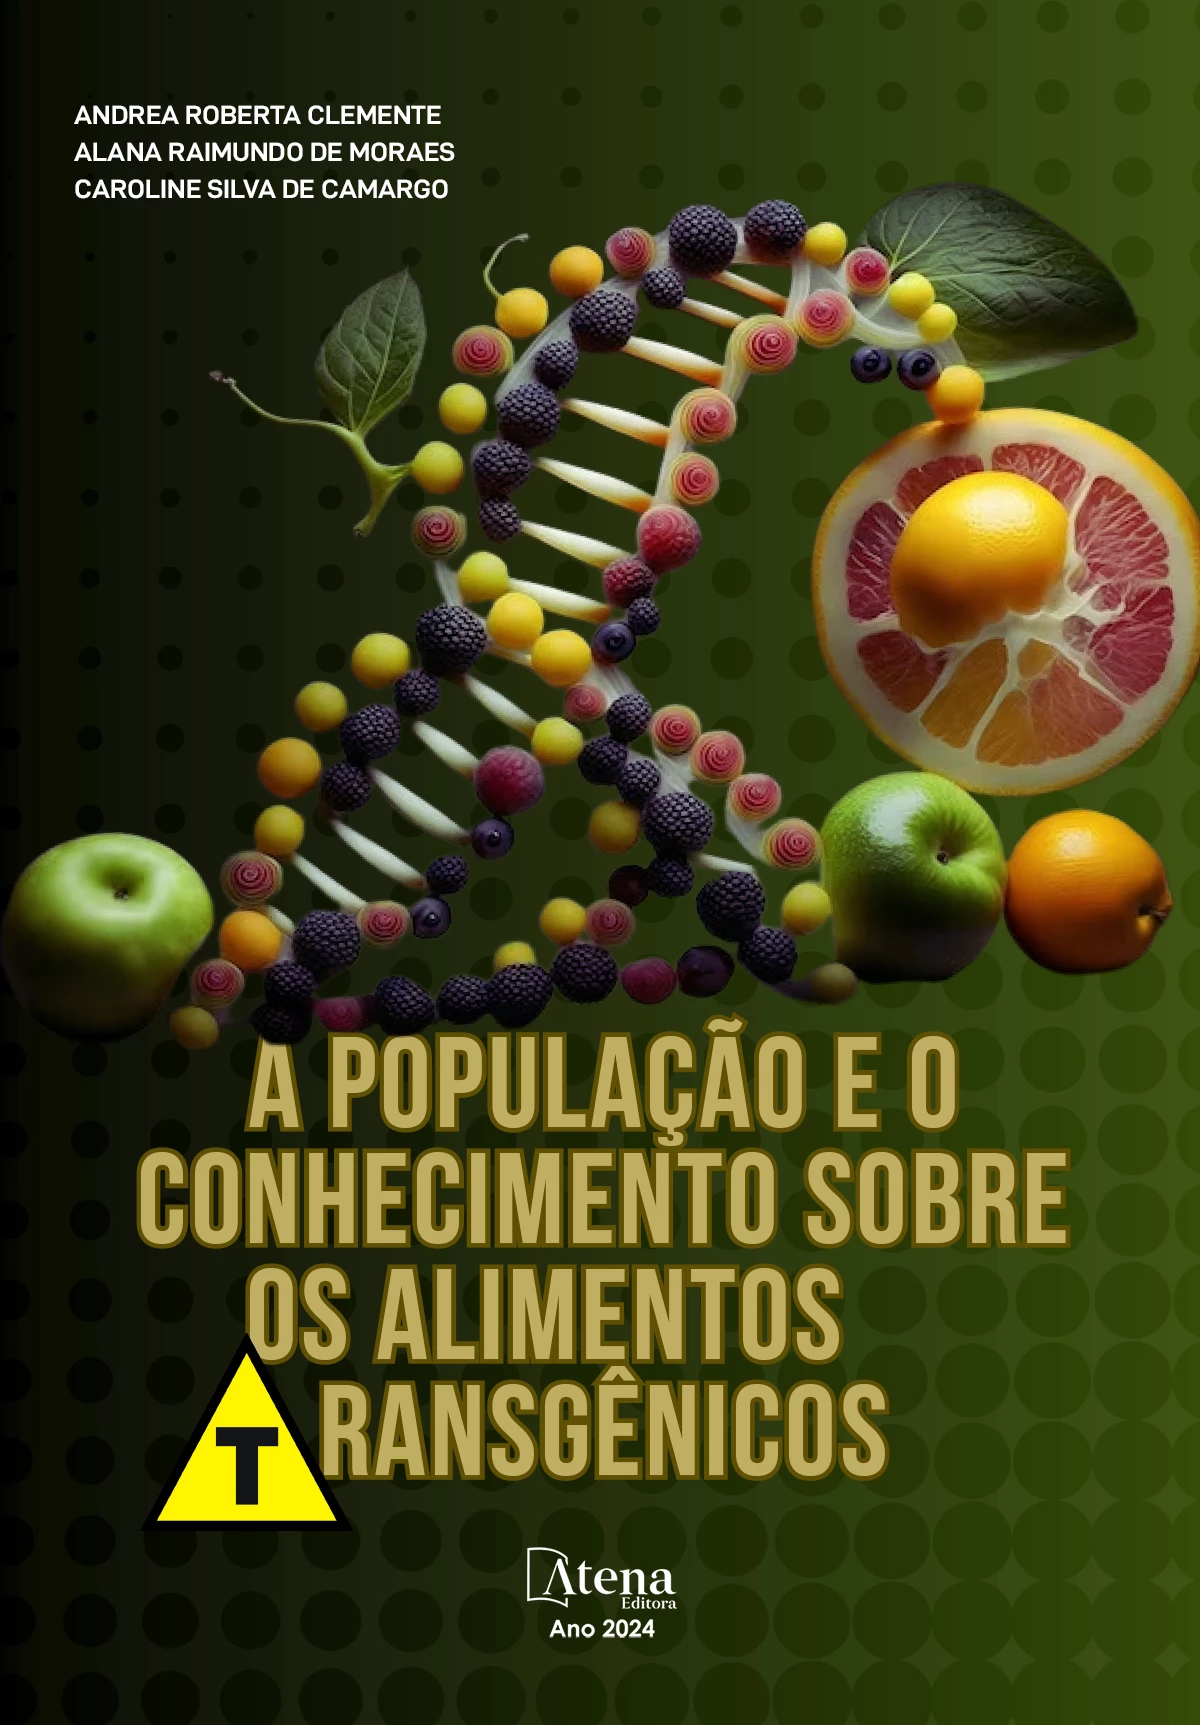 A população e o conhecimento sobre alimentos geneticamente modificados